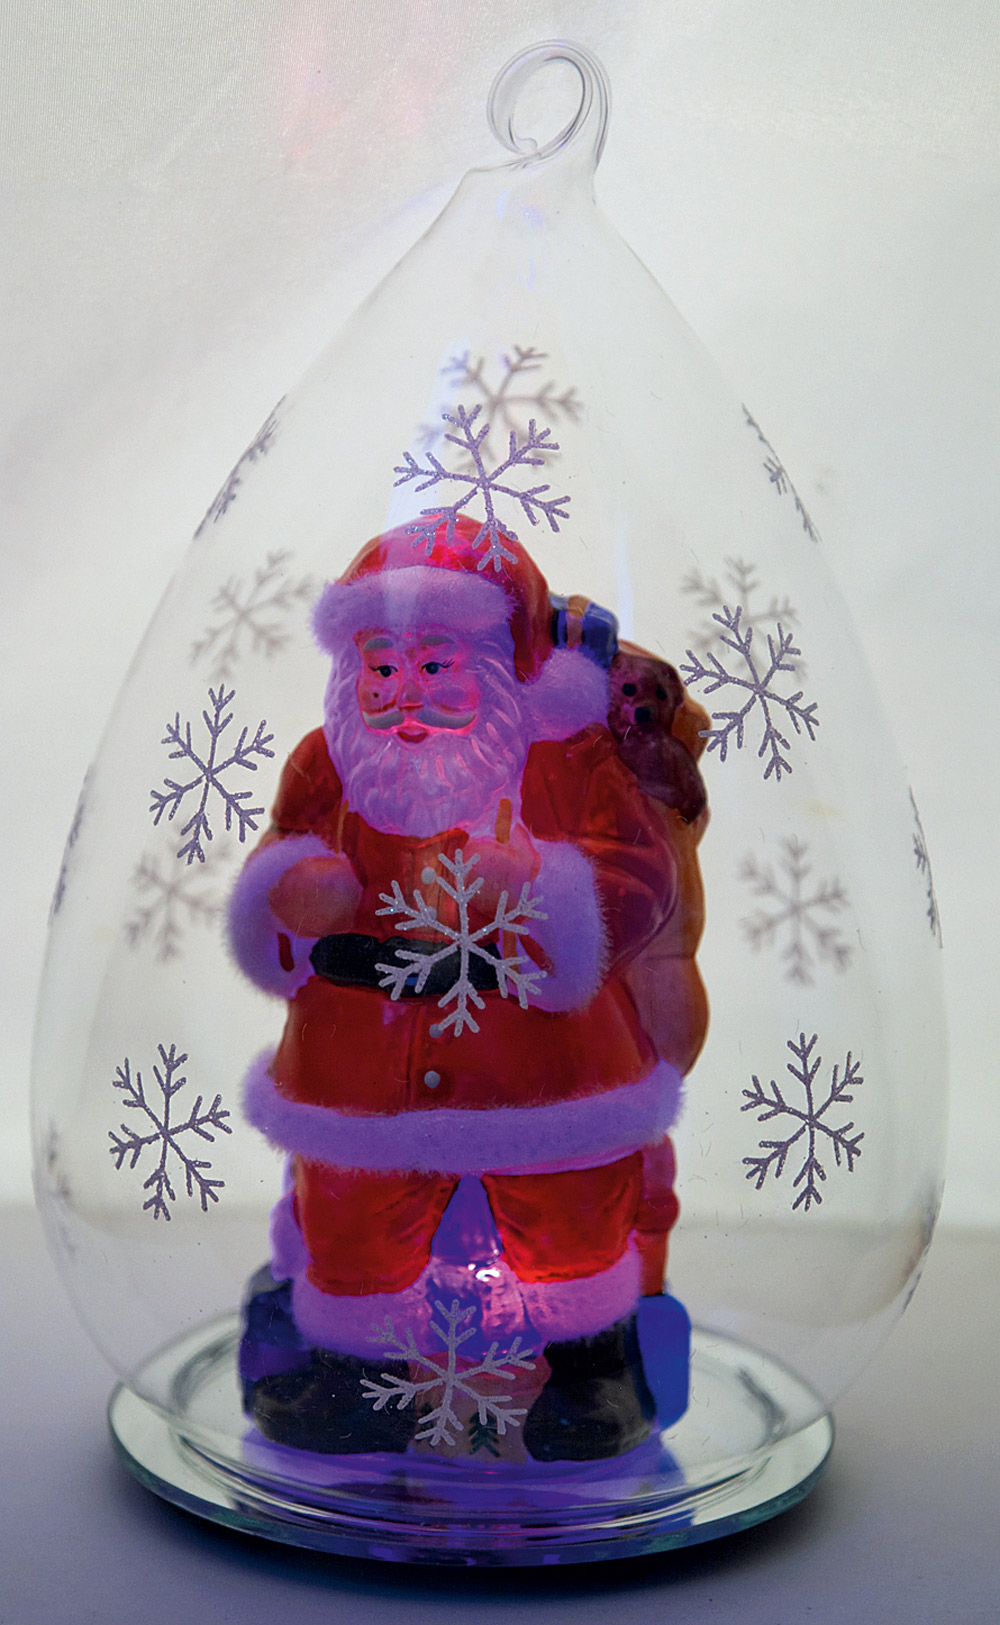 Родом из детства. Дед Мороз с полным мешком подарков под стеклянным колпаком с меняющей цвет подсветкой